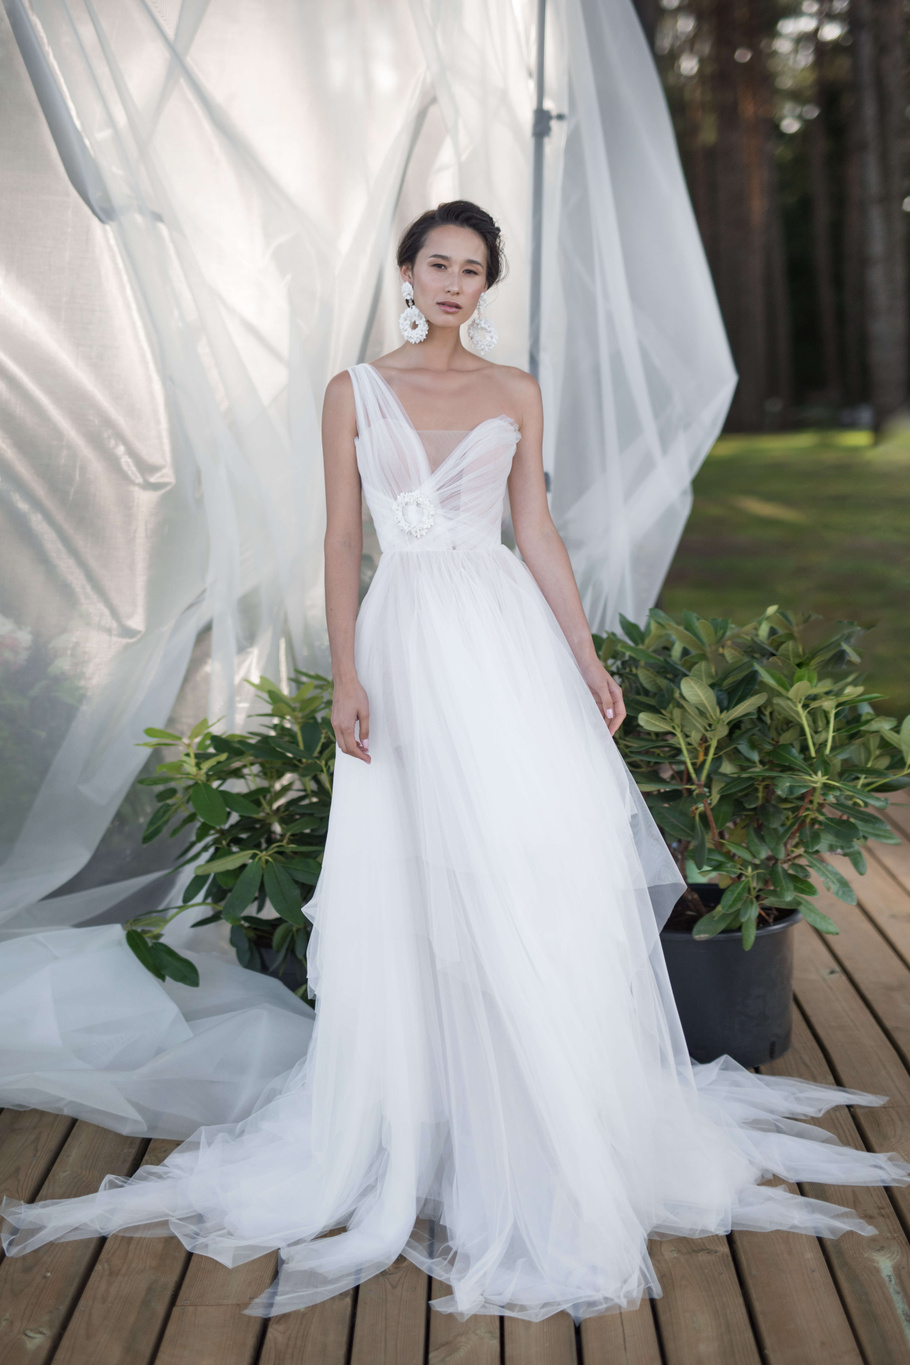 Купить свадебное платье «Ромул» Бламмо Биамо из коллекции Нимфа 2020 года в Санкт-Петербурге